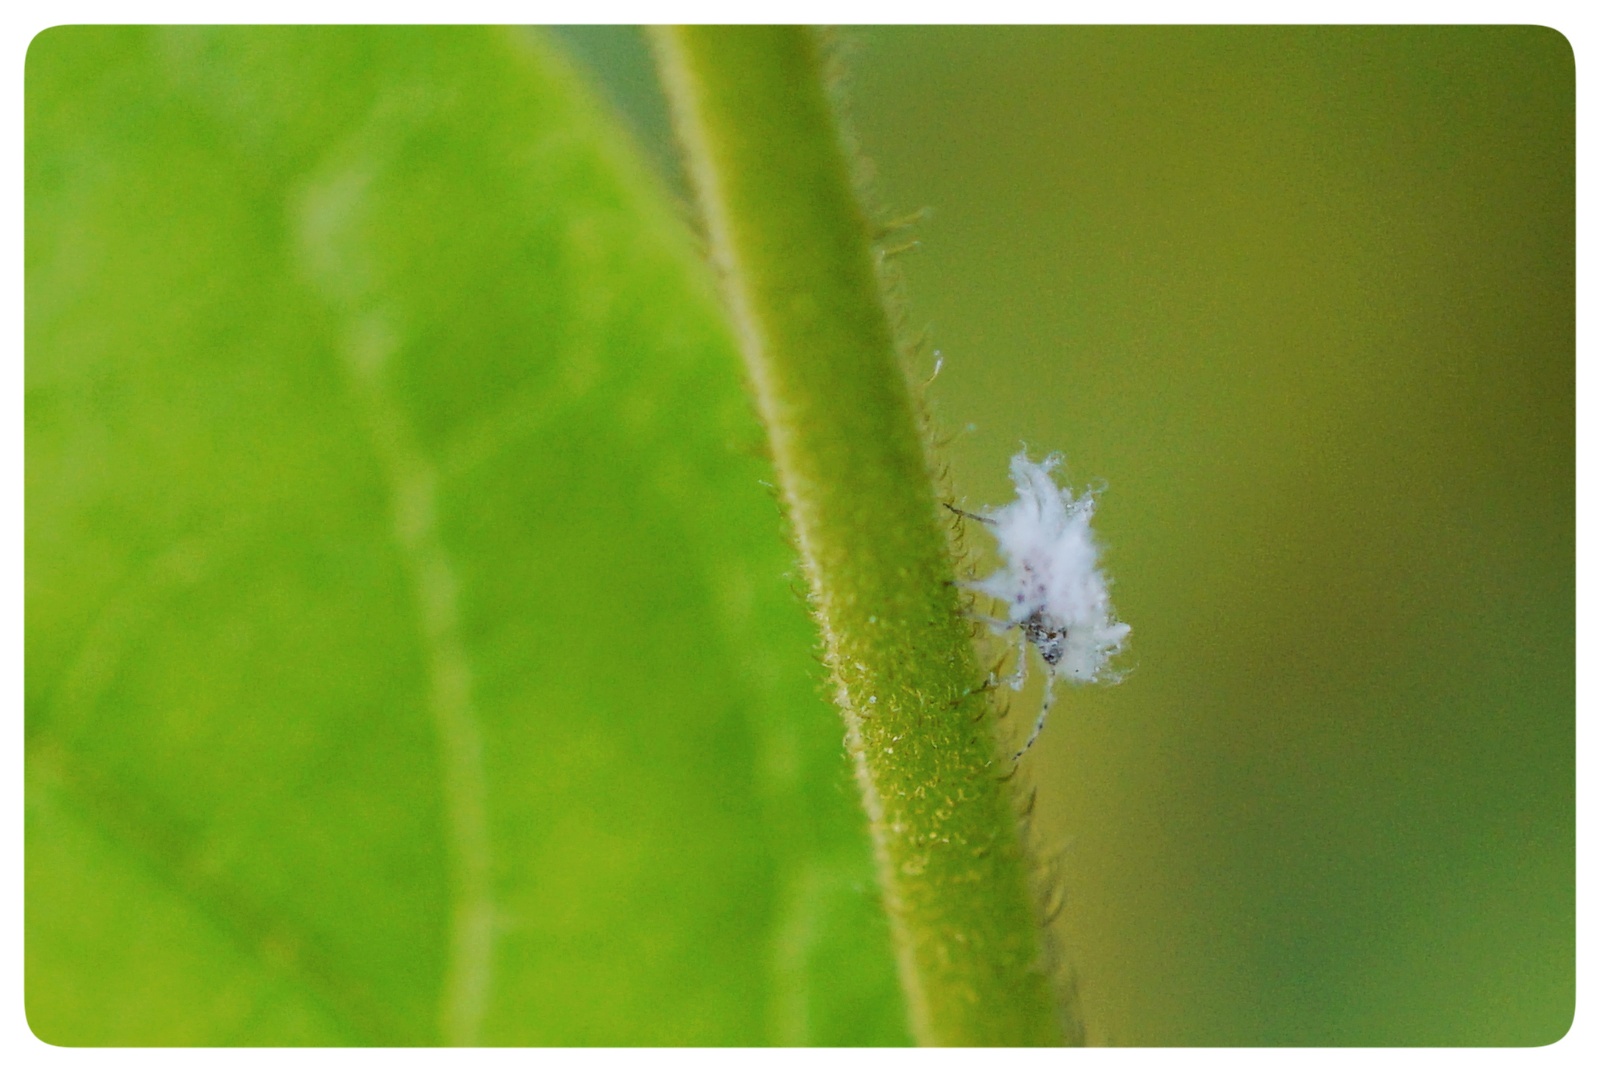 这是蚜虫,白色的,少见.